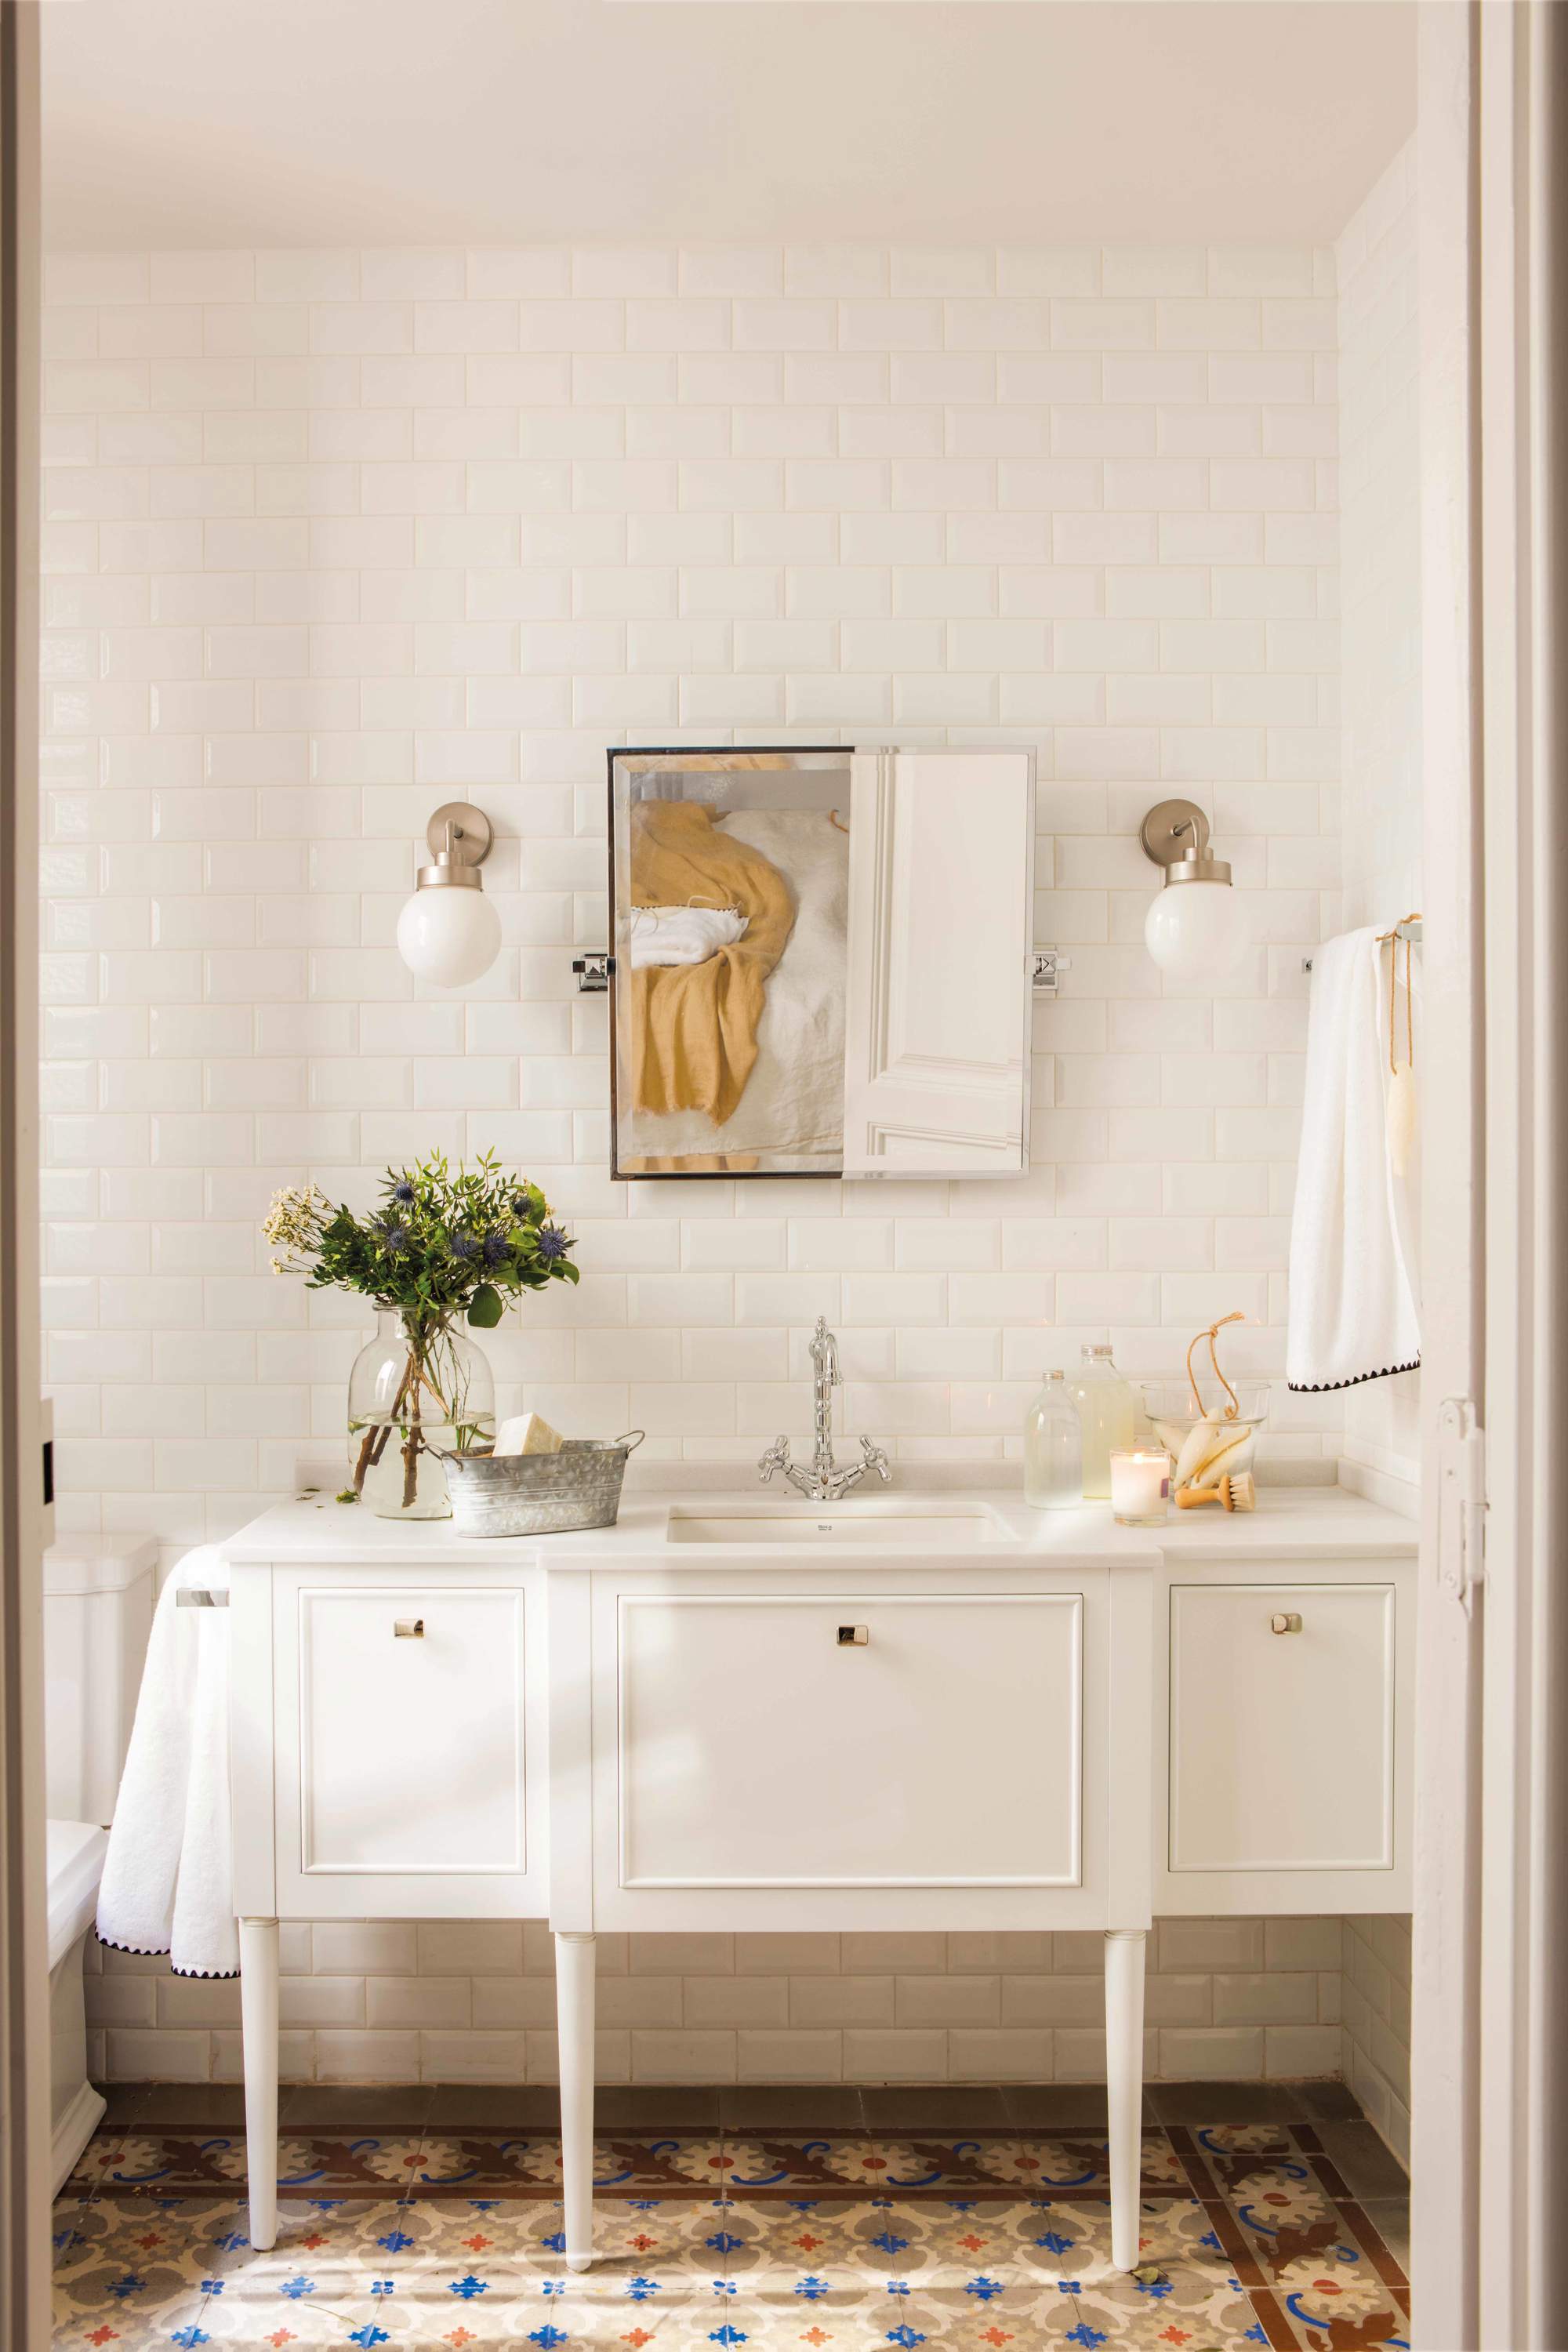 Baño con mueble bajolavabo con puertas lacado en blanco, espejo, apliques globo, azulejos metro y suelo hidraúlico